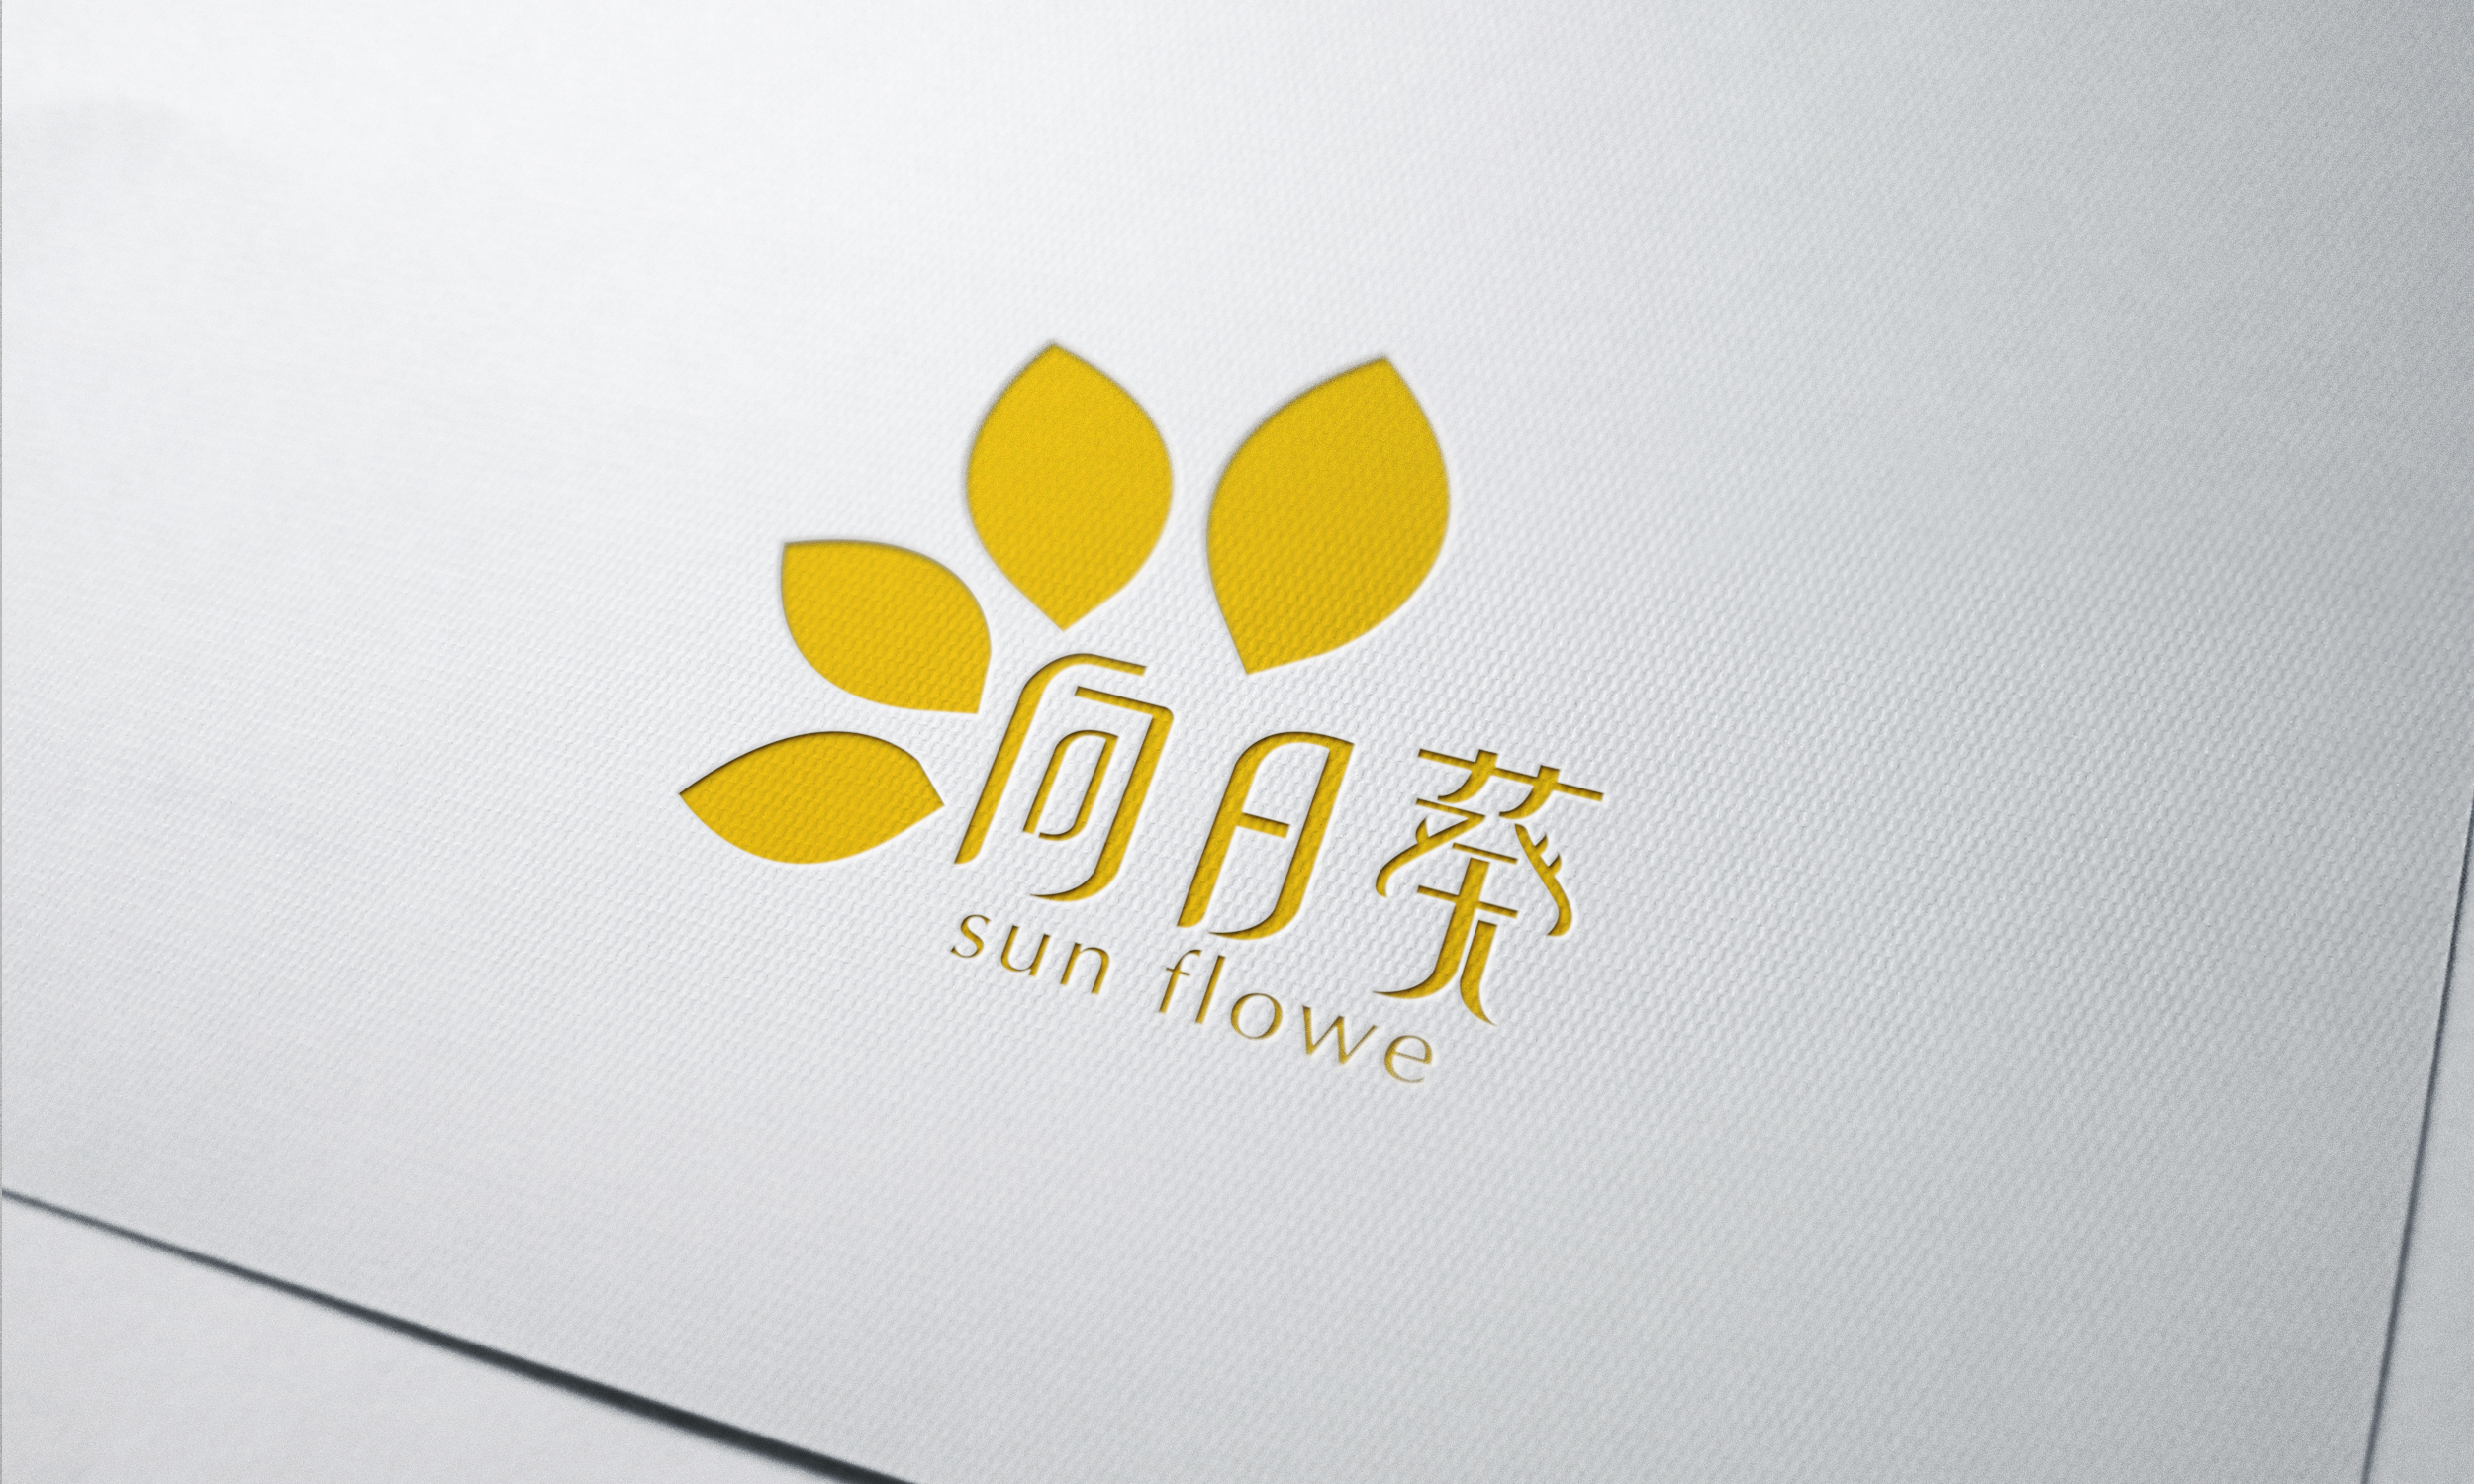 "向日葵"花店logo设计